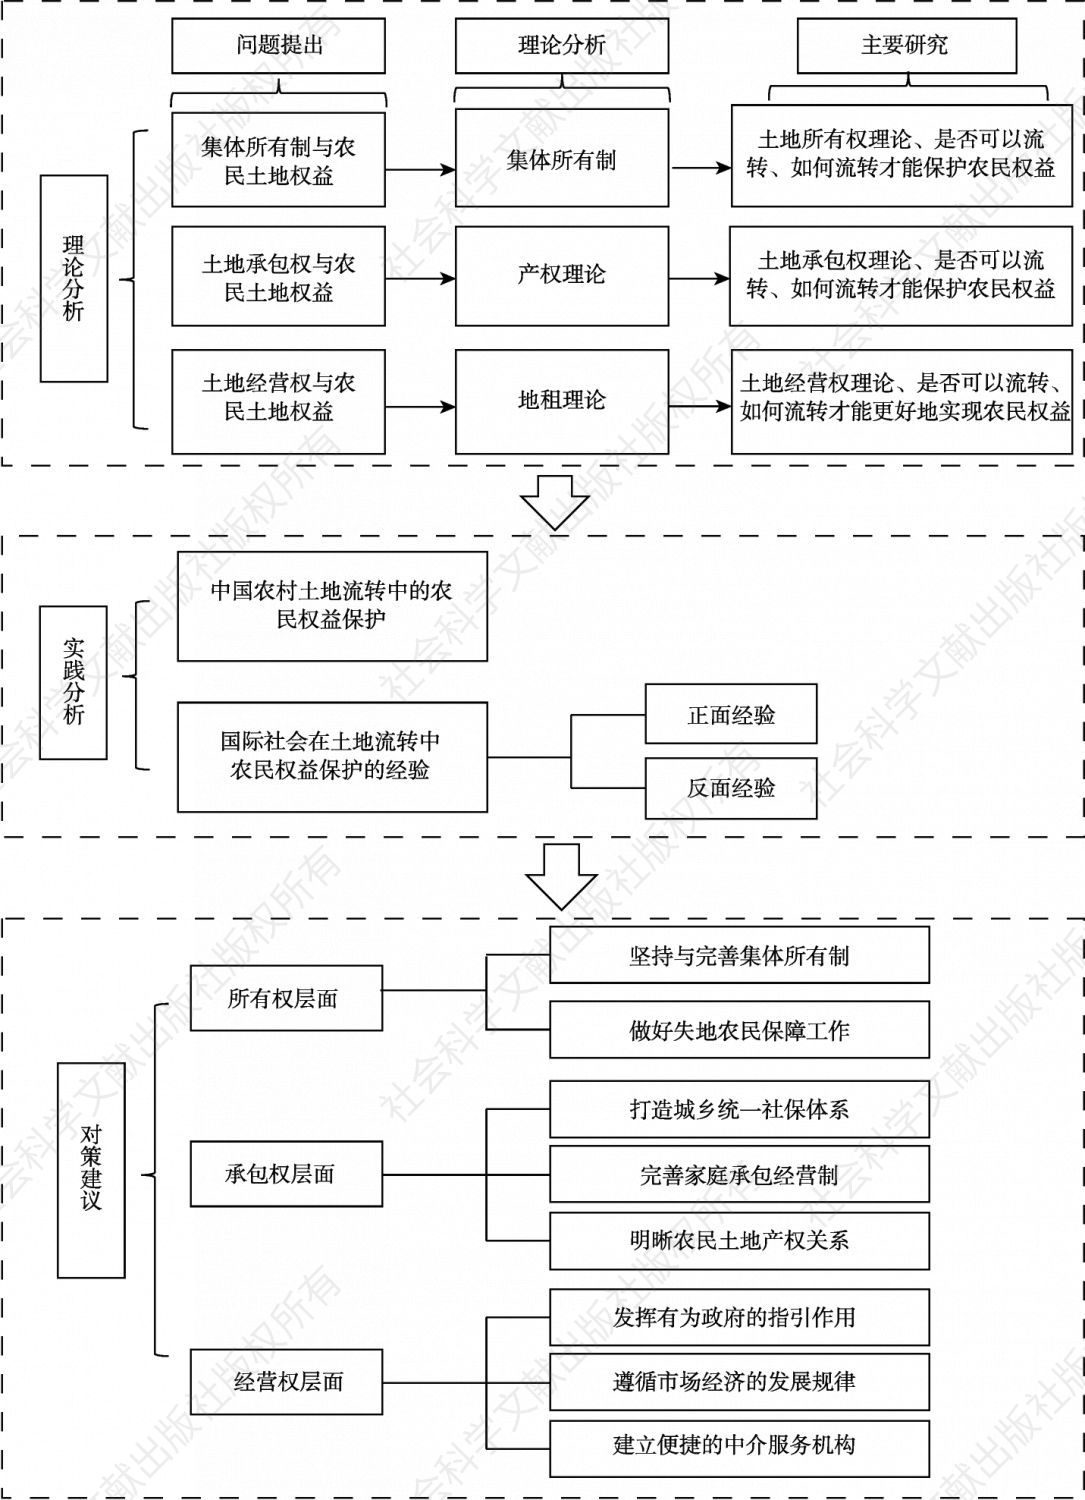 图1-1 本书结构框架